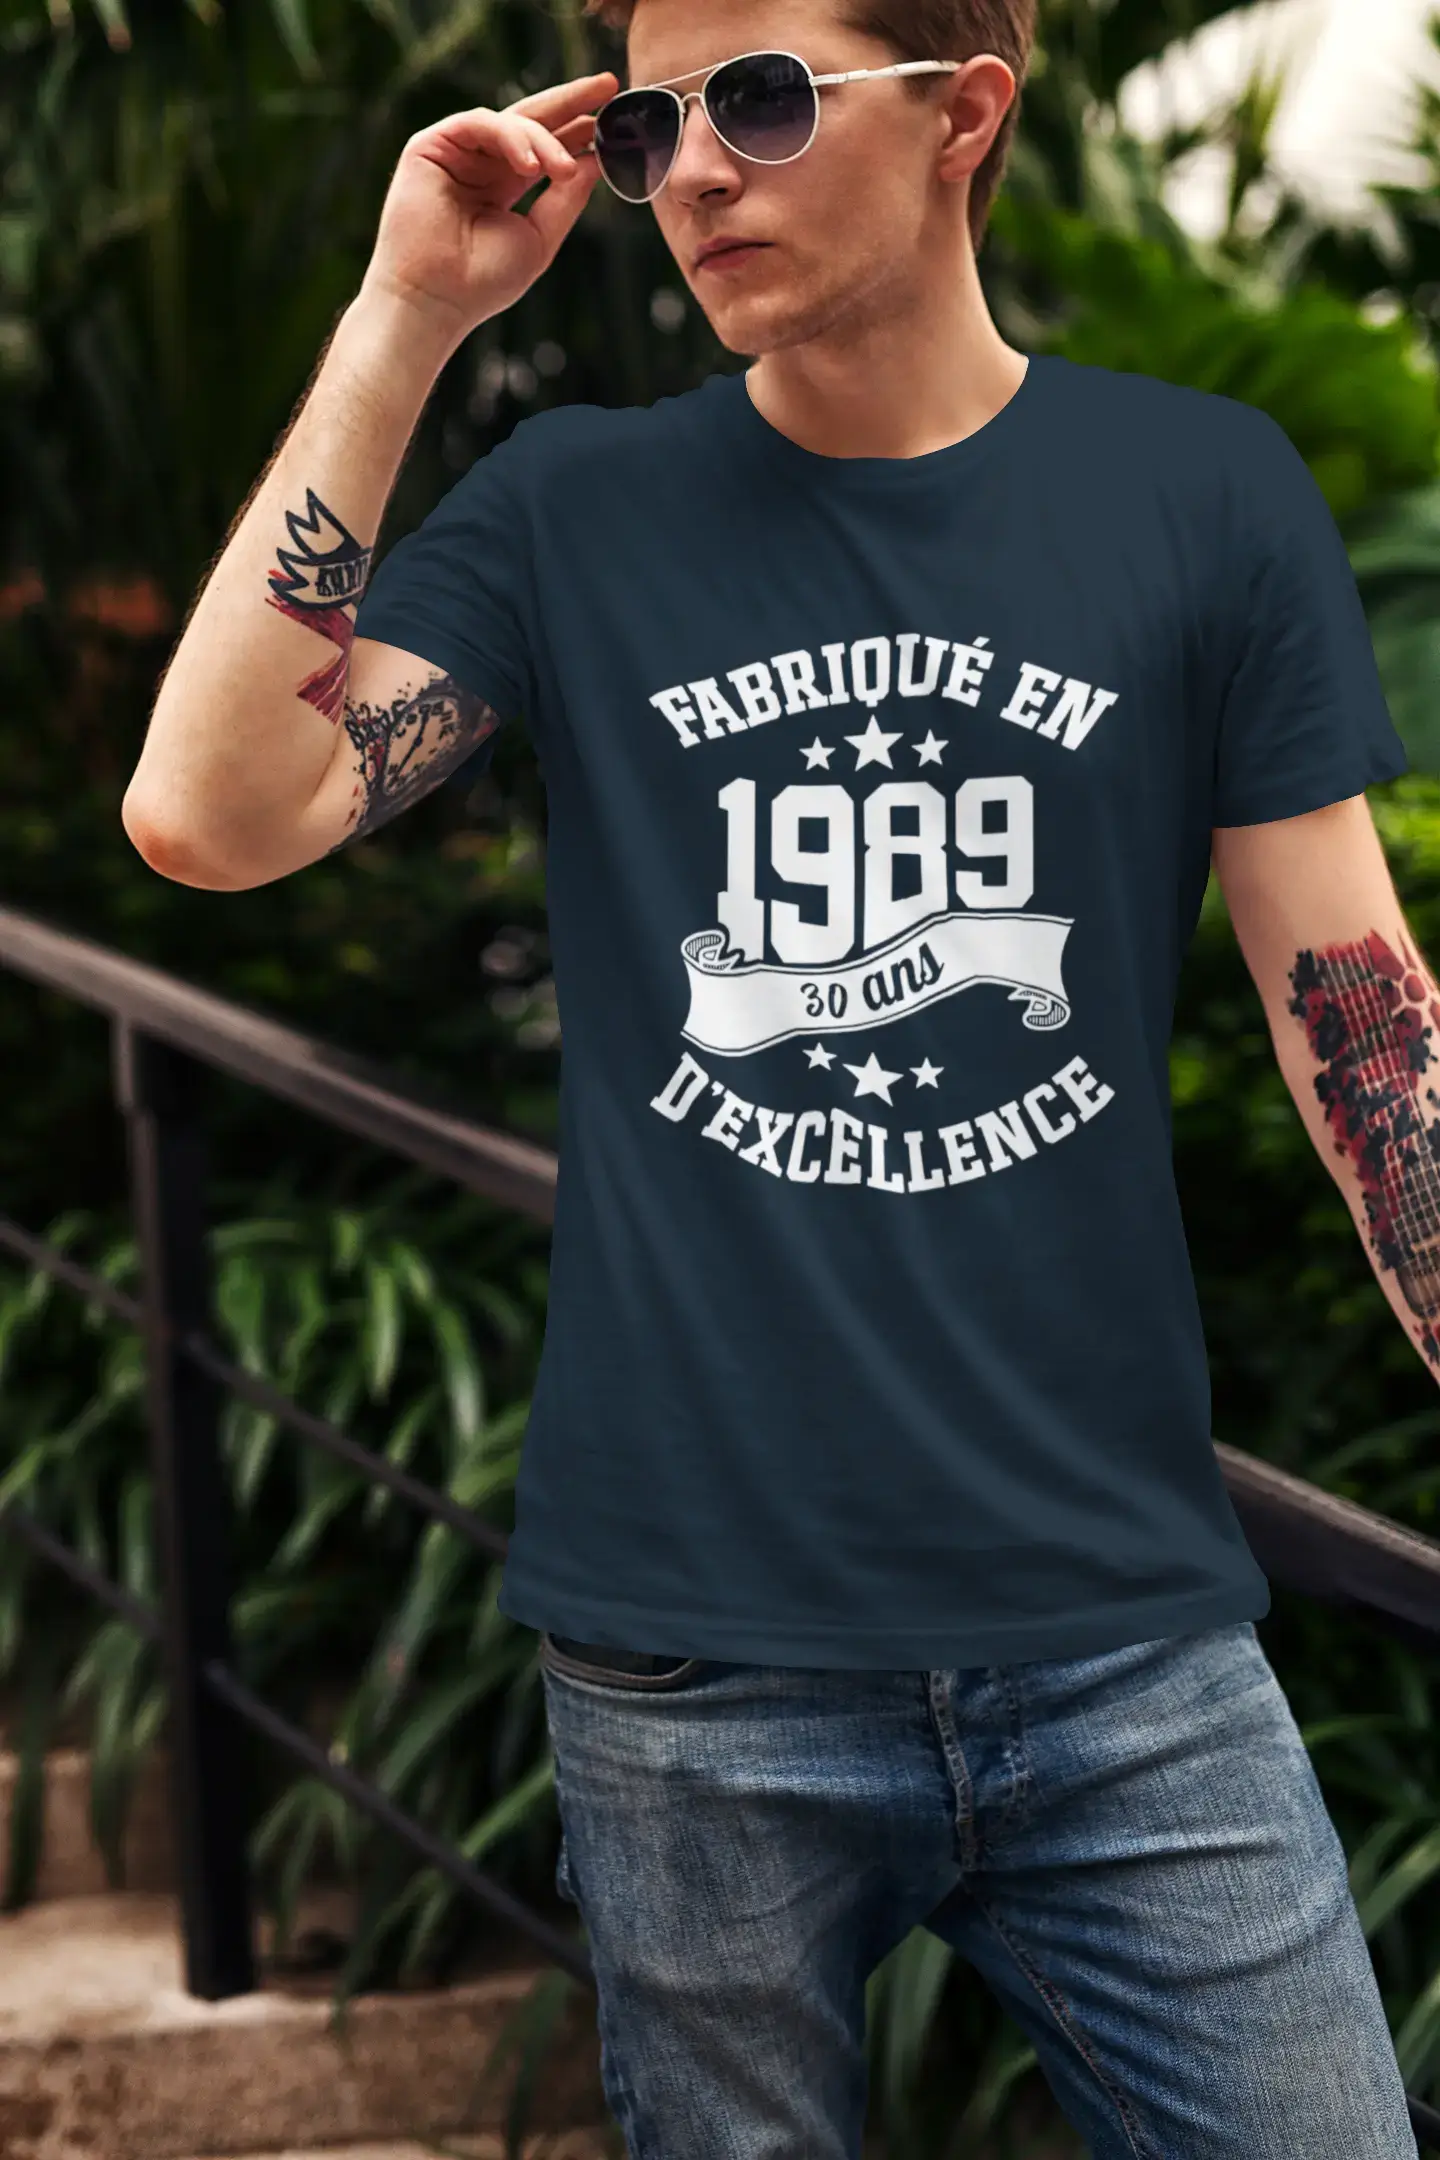 ULTRABASIC – Hergestellt im Jahr 1989, 30 Jahre alt. Geniales Unisex-T-Shirt Bordeaux